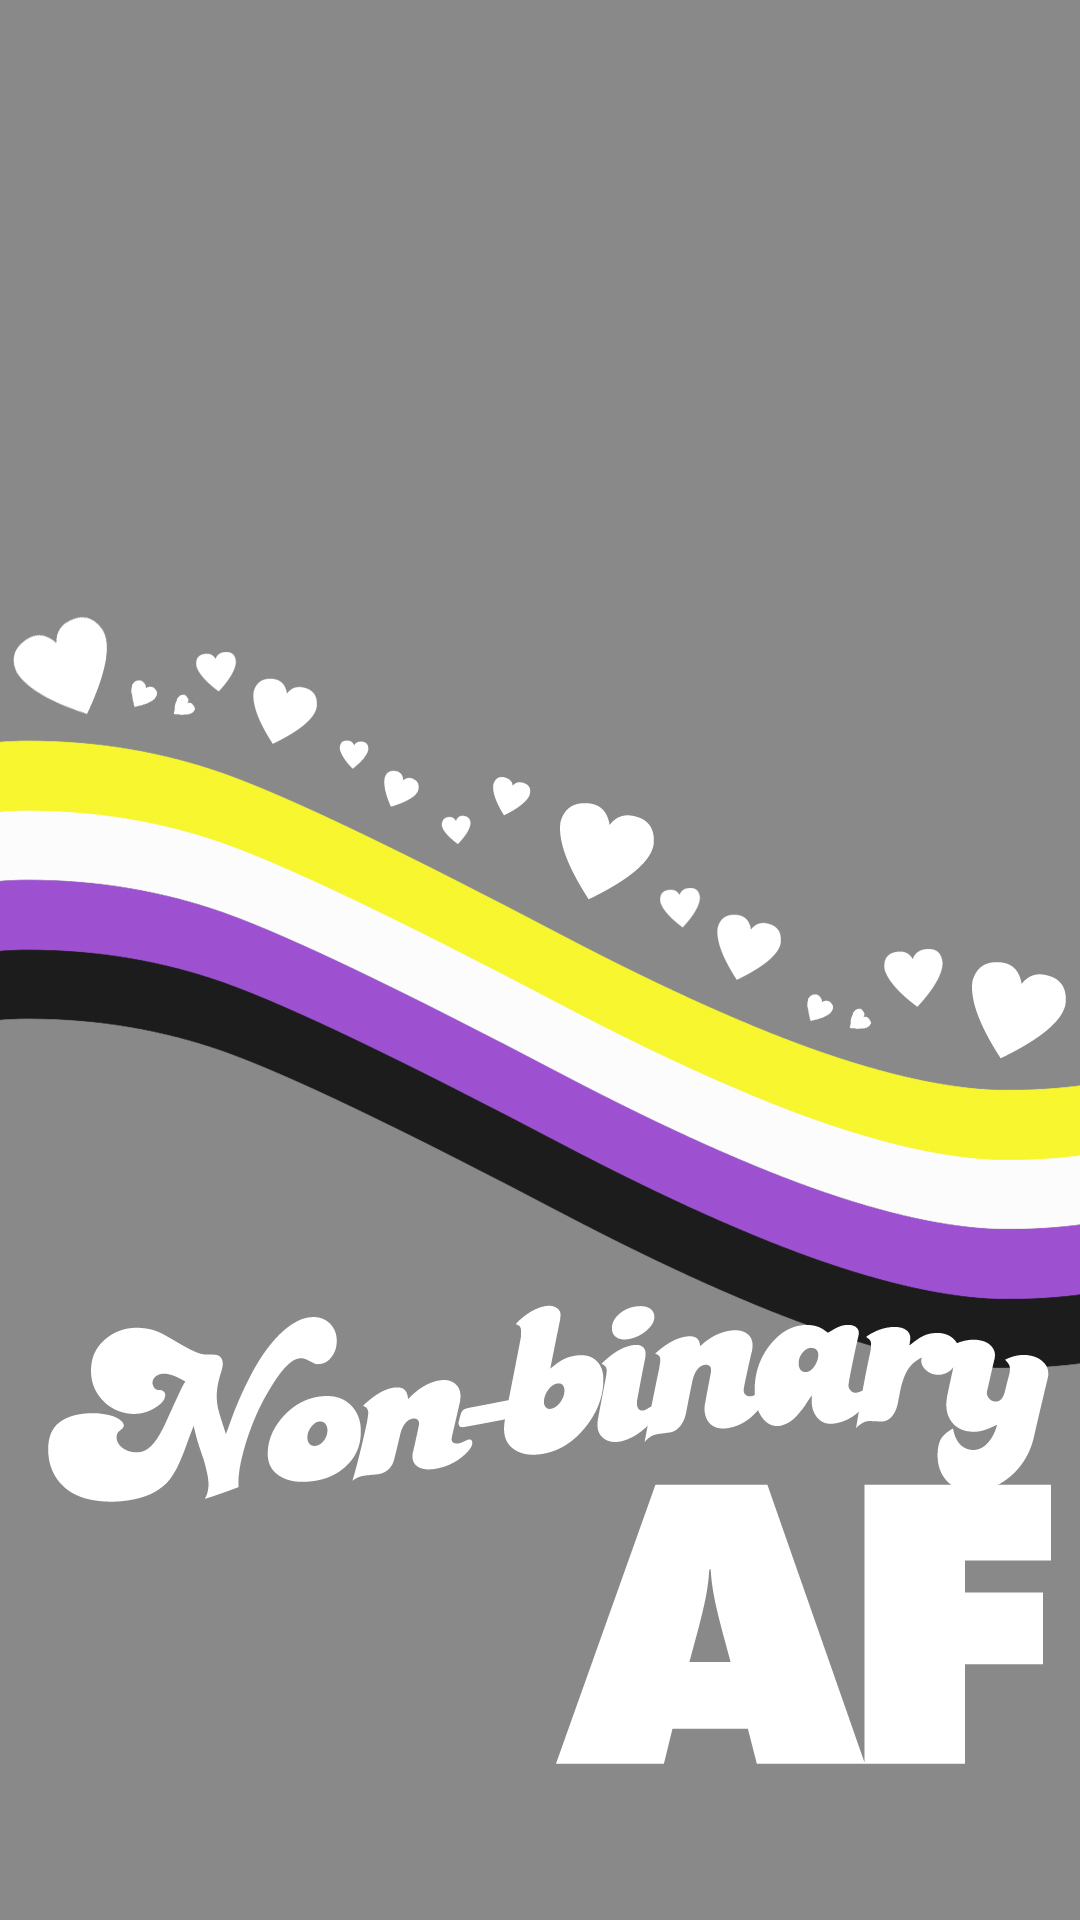 So I made some nonbinary pride wallpaper   rNonBinary